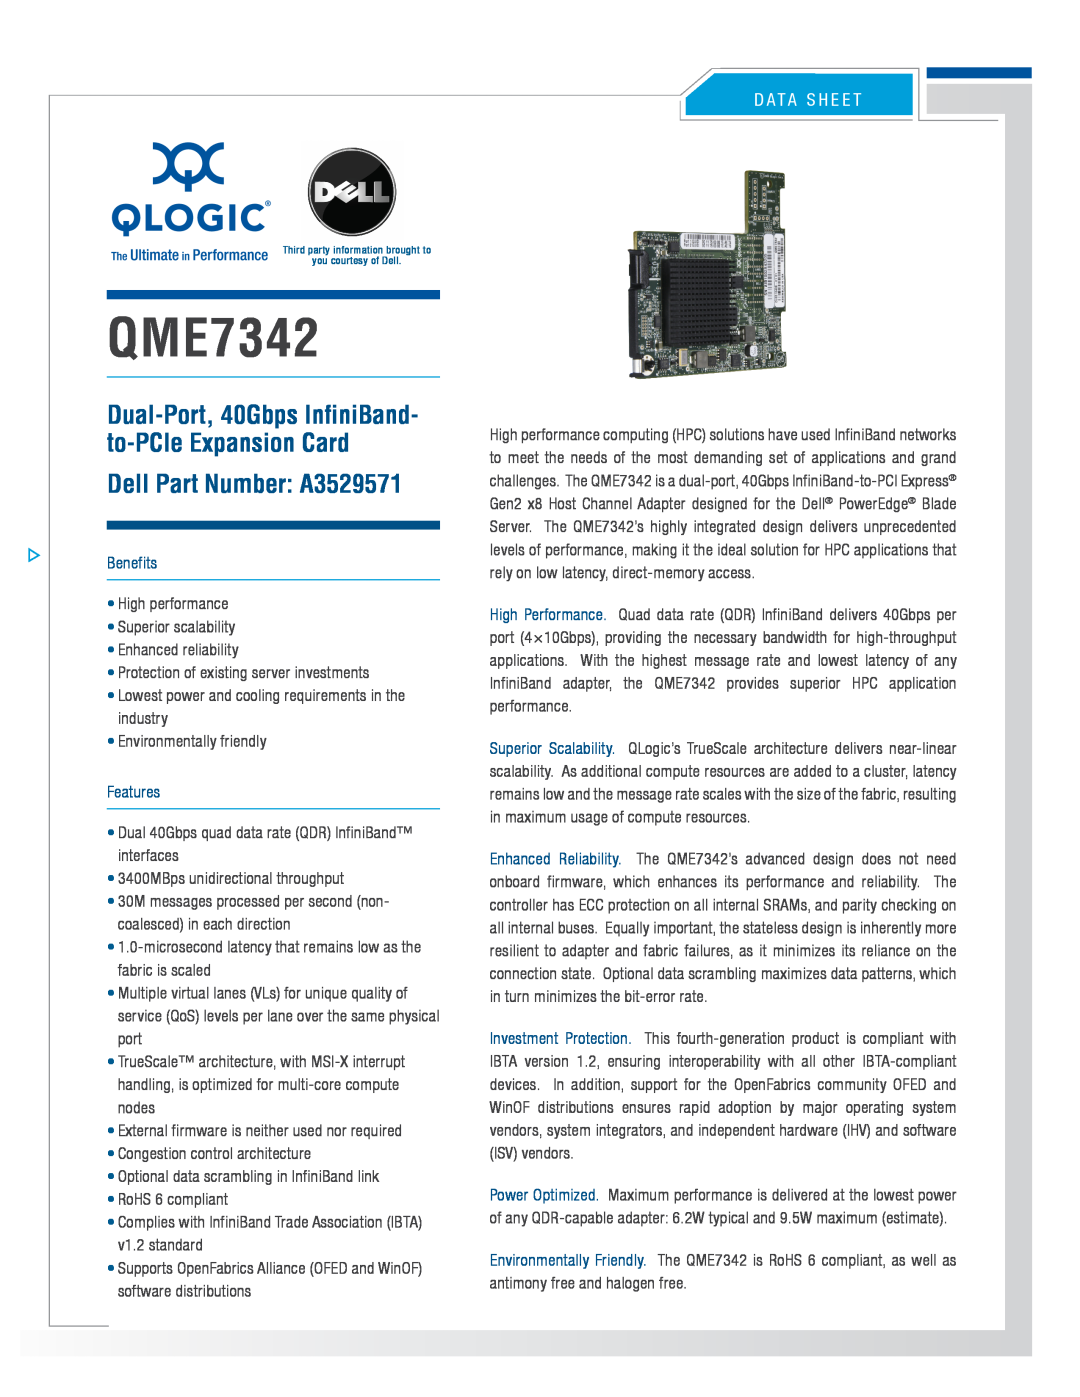 Intel QME7342-CK manual Dell Part Number A3529571, D A T A S H E E T, Benefits, Features 